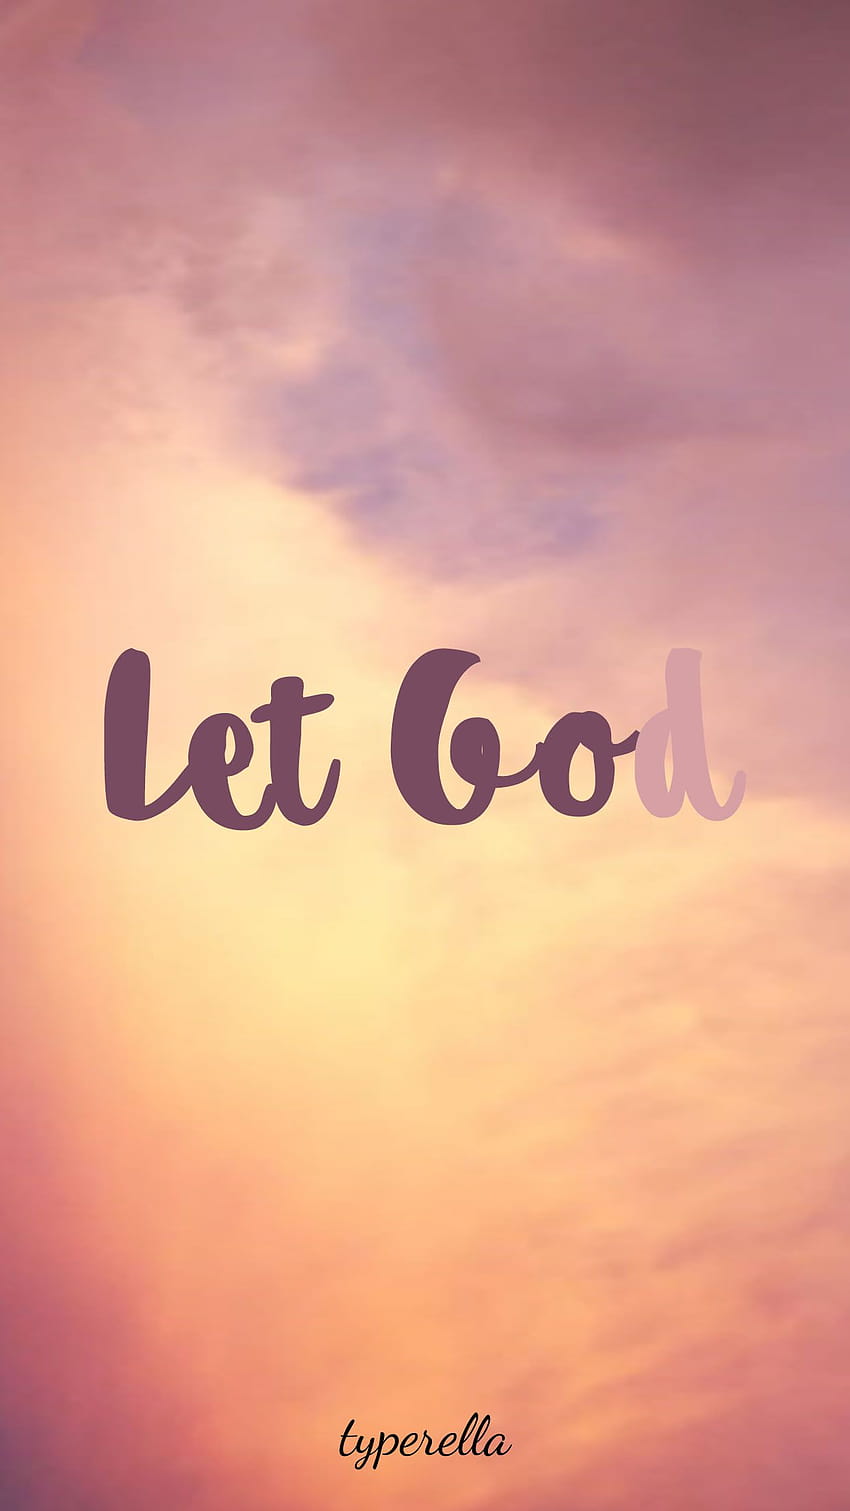 Déjate ir y deja que Dios confíe en Él con todo tu corazón. En Dios confío en el iPhone. fondo de pantalla del teléfono